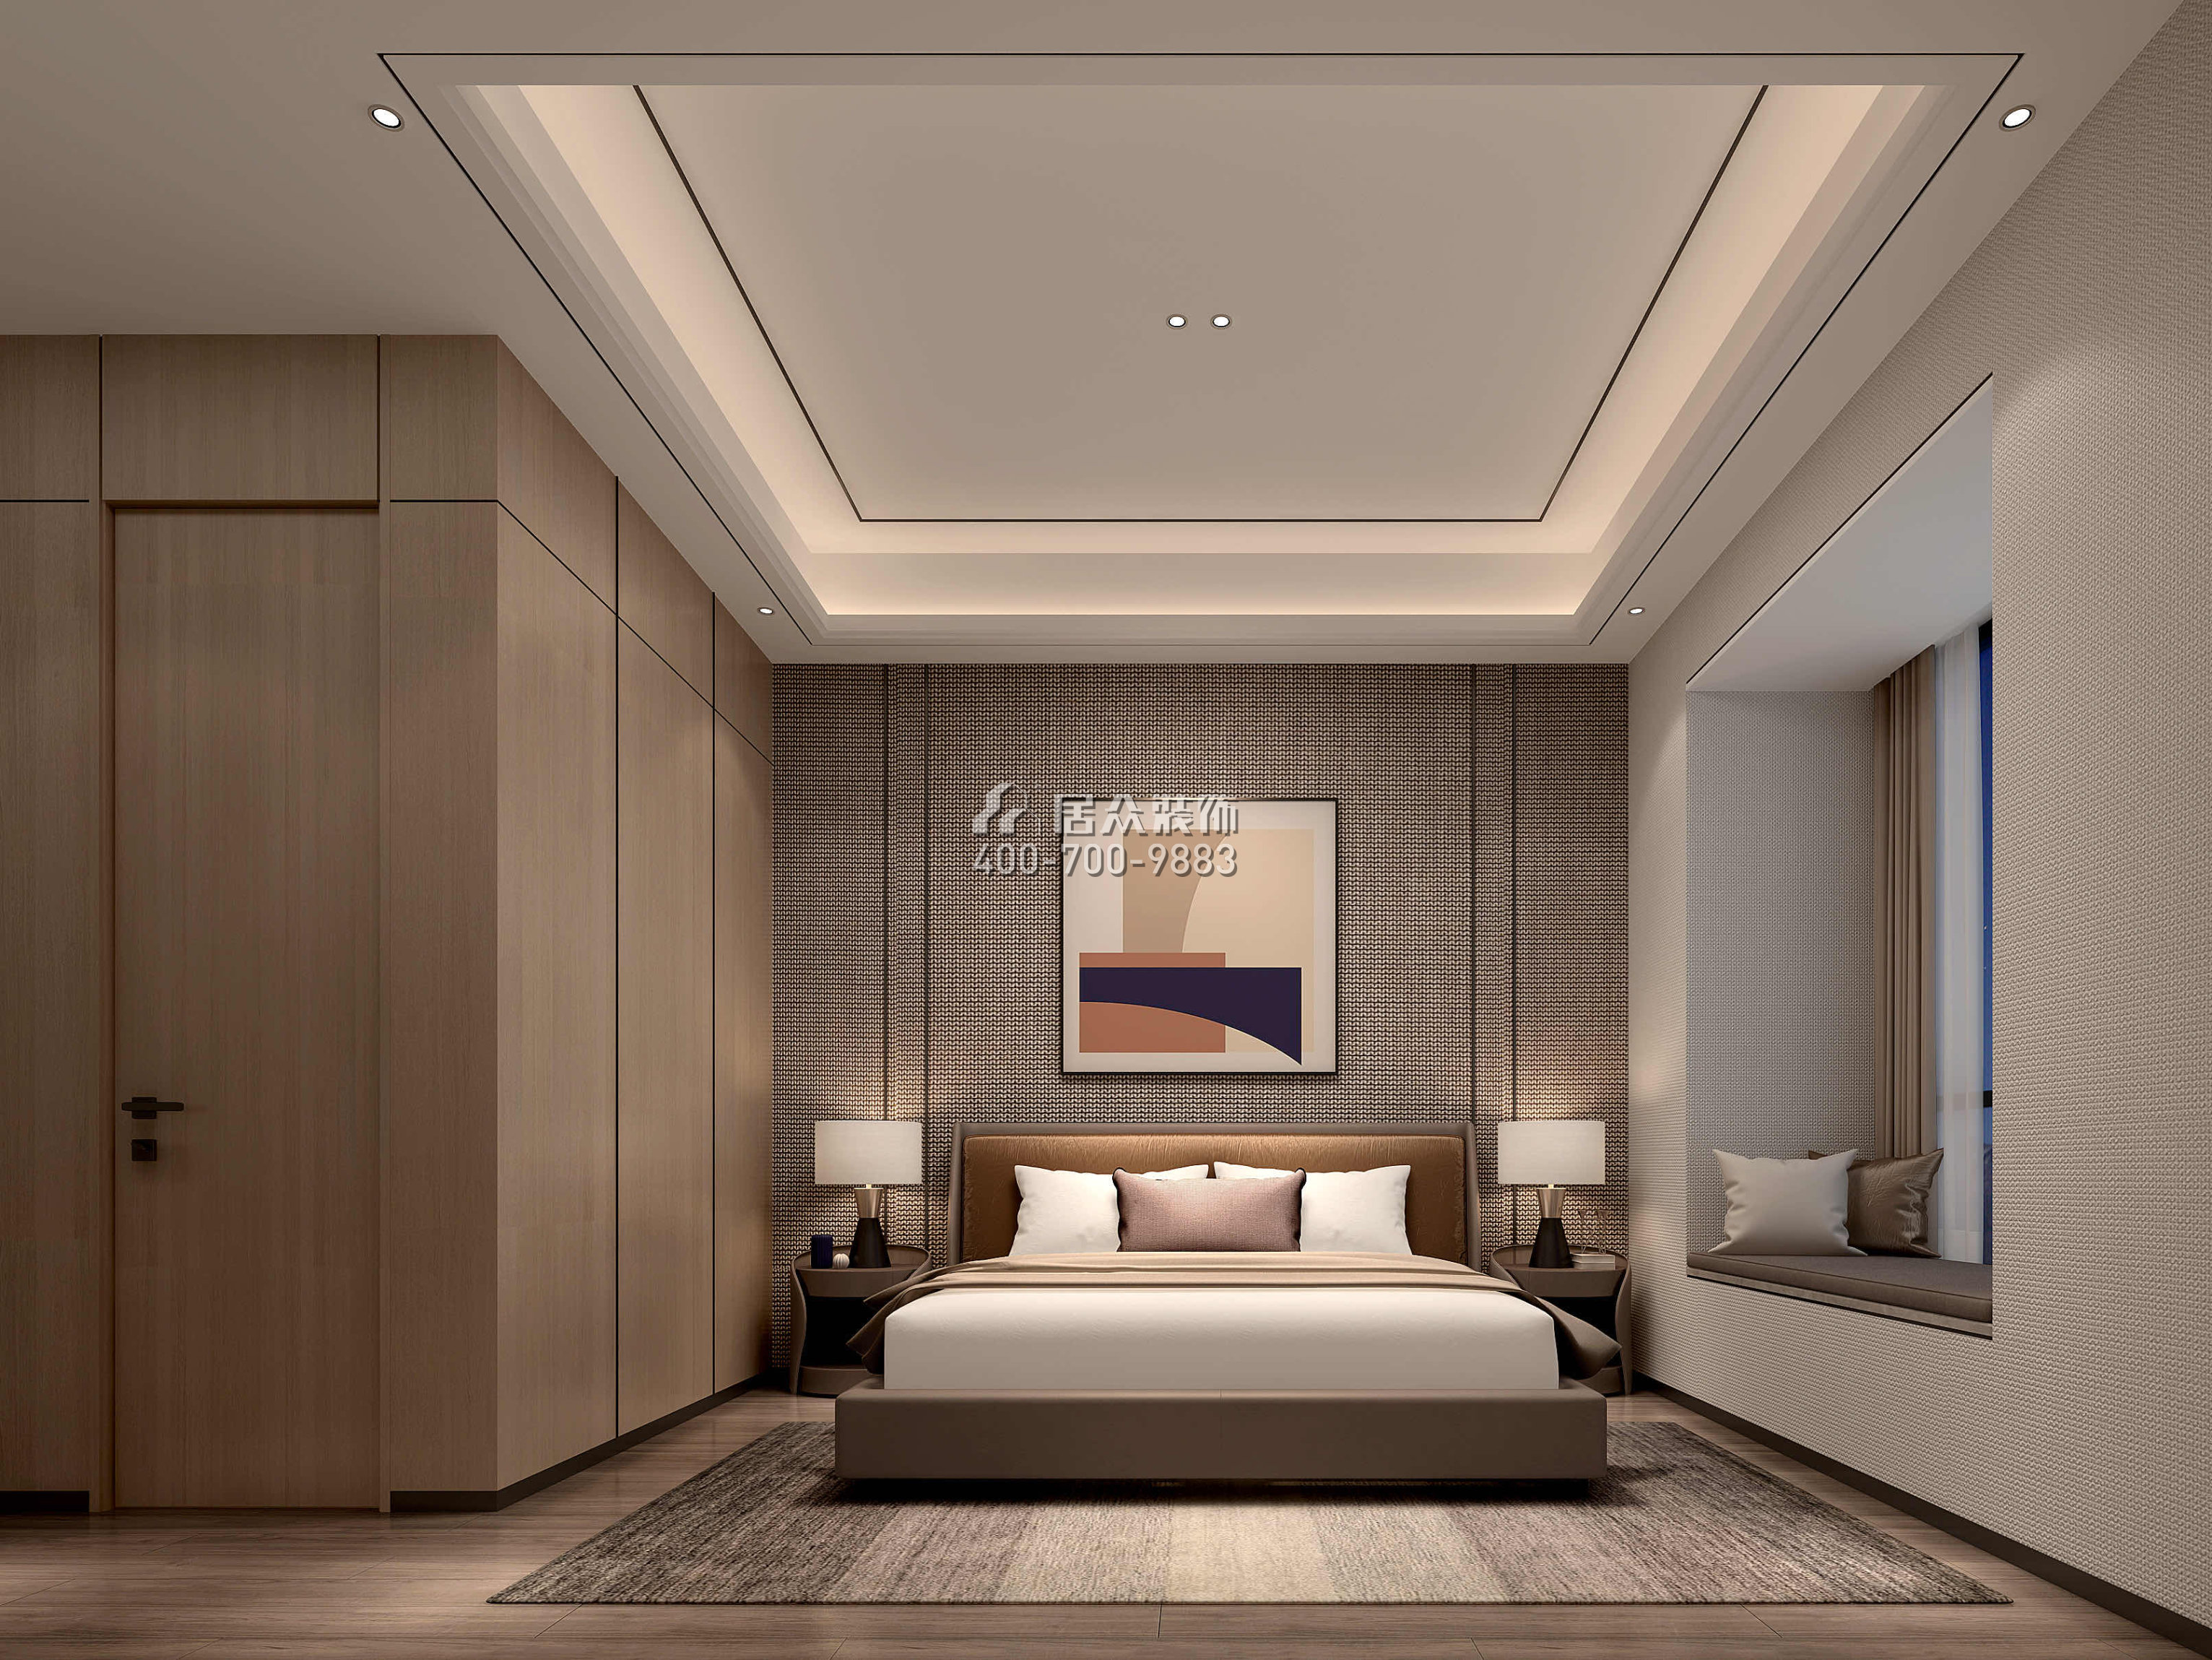 海逸豪庭366平方米現代簡約風格別墅戶型臥室裝修效果圖